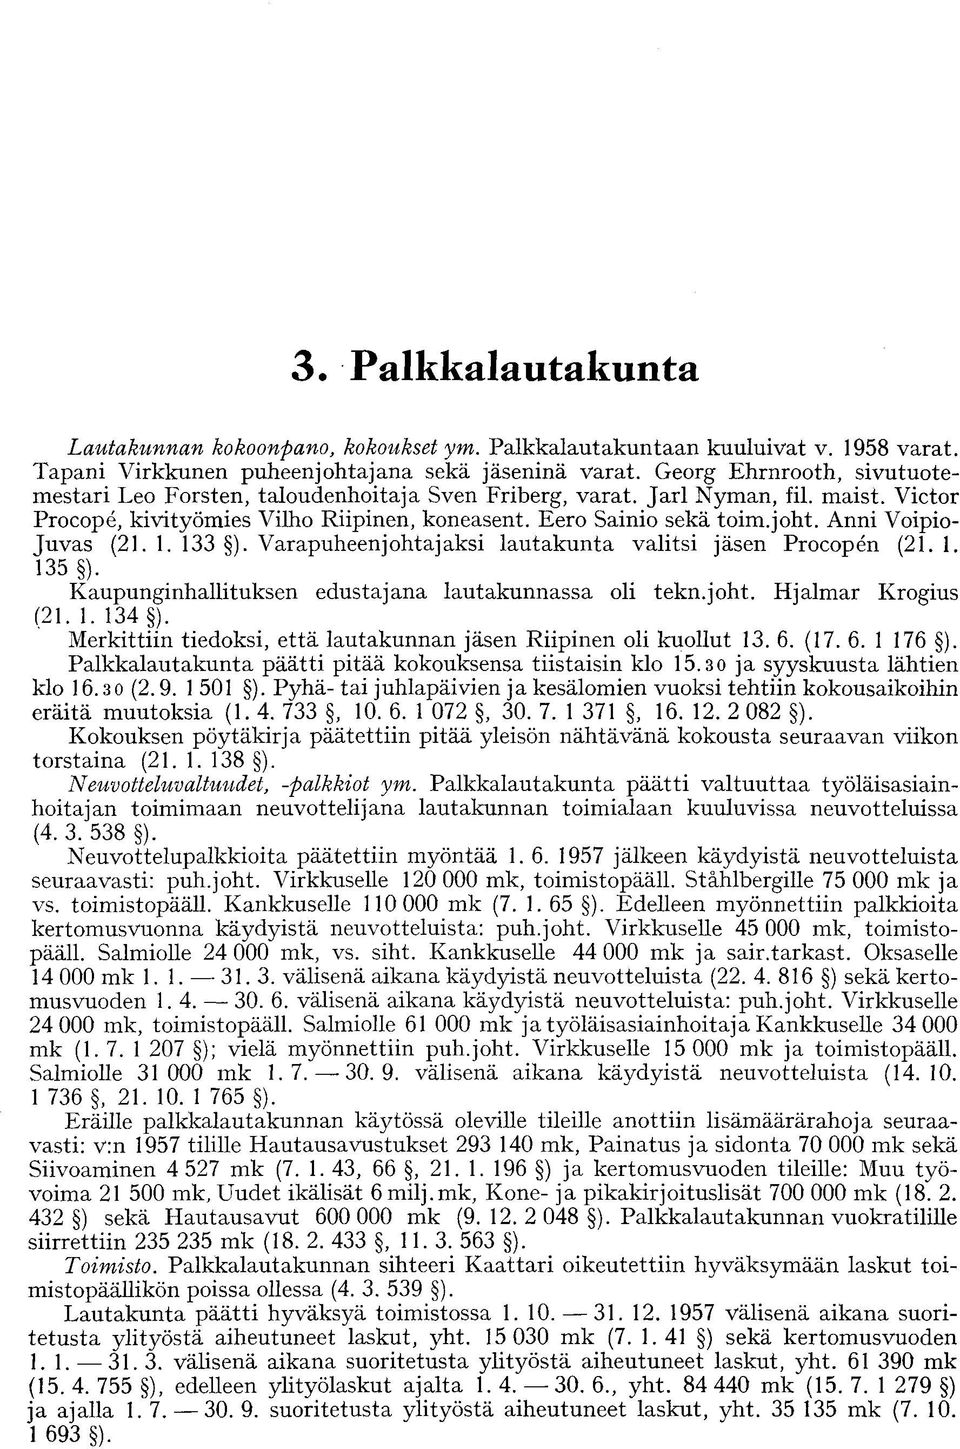 Anni Voipio- Juvas (21. 1. 133 ). Varapuheenjohtajaksi lautakunta valitsi jäsen Procopen (21.1. 135 ). Kaupunginhallituksen edustajana lautakunnassa oli tekn.joht. Hjalmar Krogius (21. 1. 134 ).